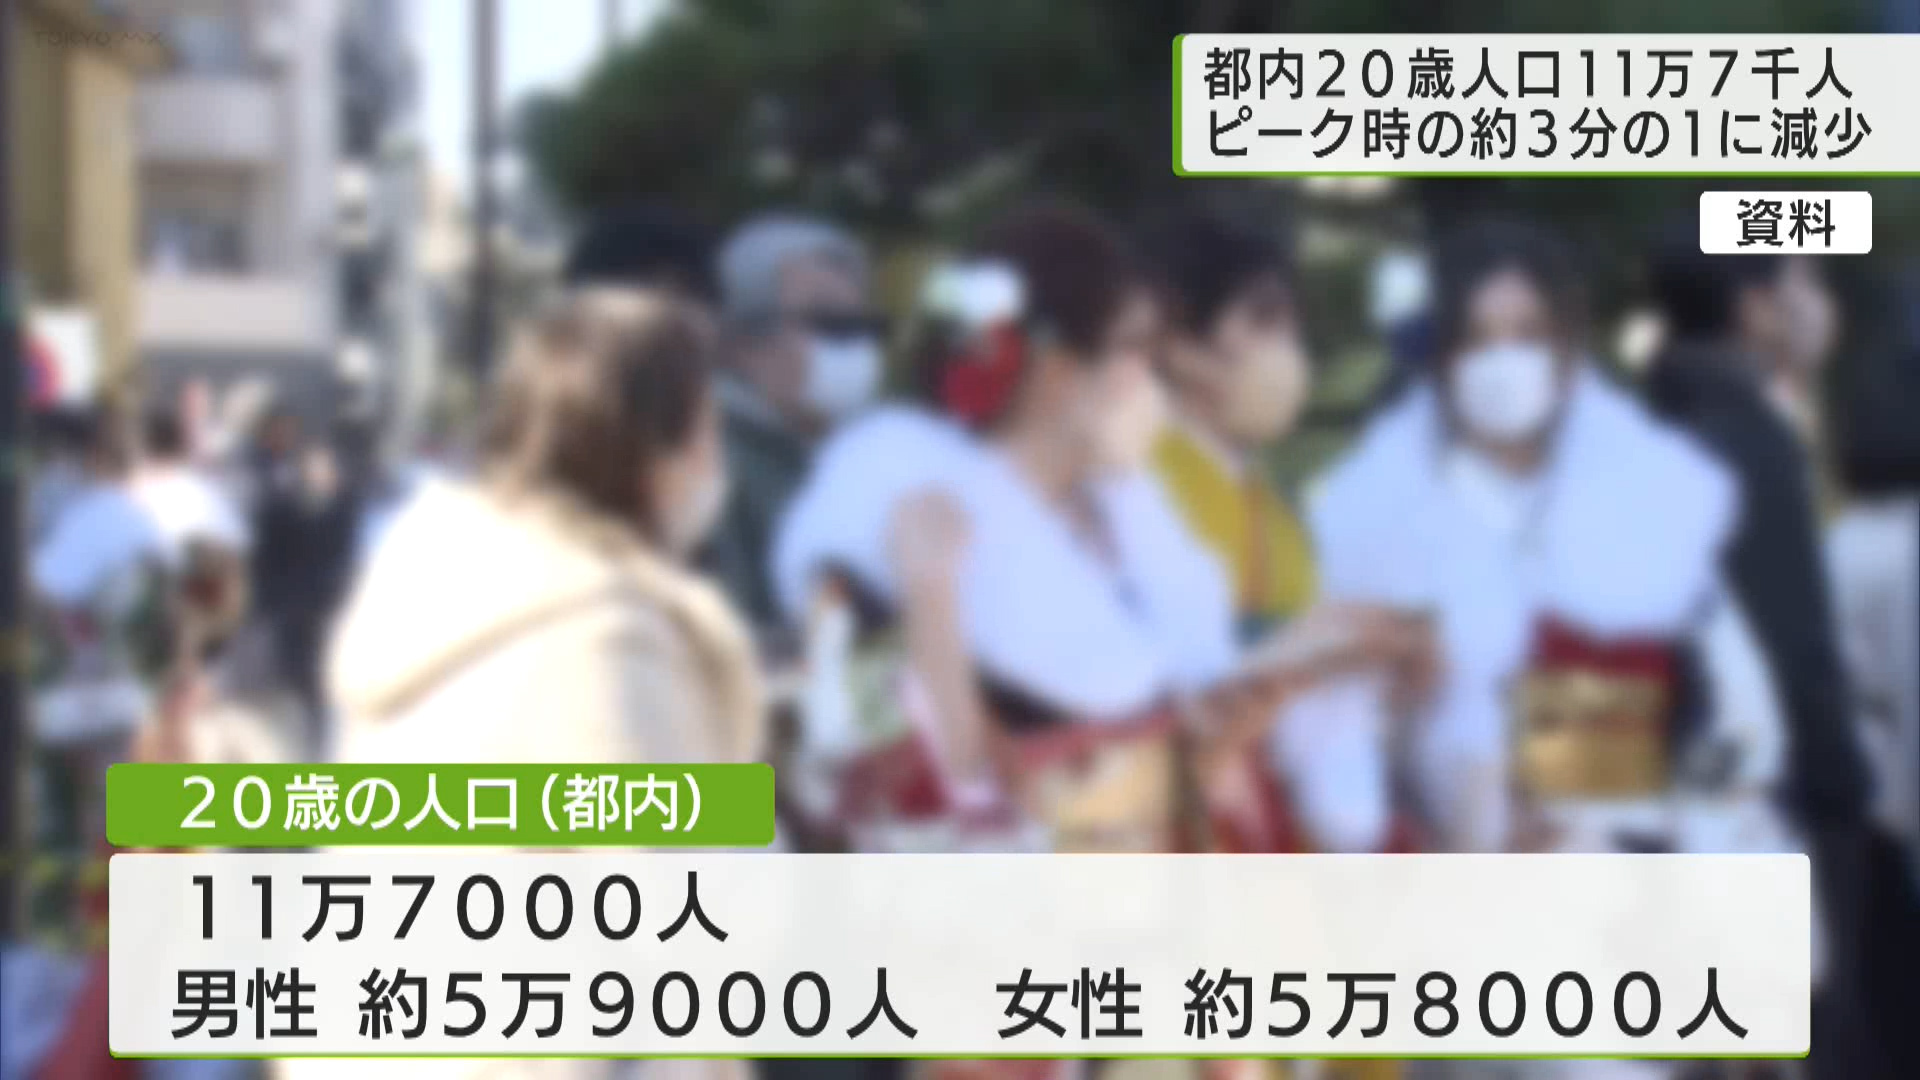 1月8日は成人の日です。「20歳のつどい」が都内各地で開かれるなか、東京都は今年（2024年）に20歳を迎える人口が11万7千人と、ピーク時の約3分の1まで減っていることを明らかにしました。